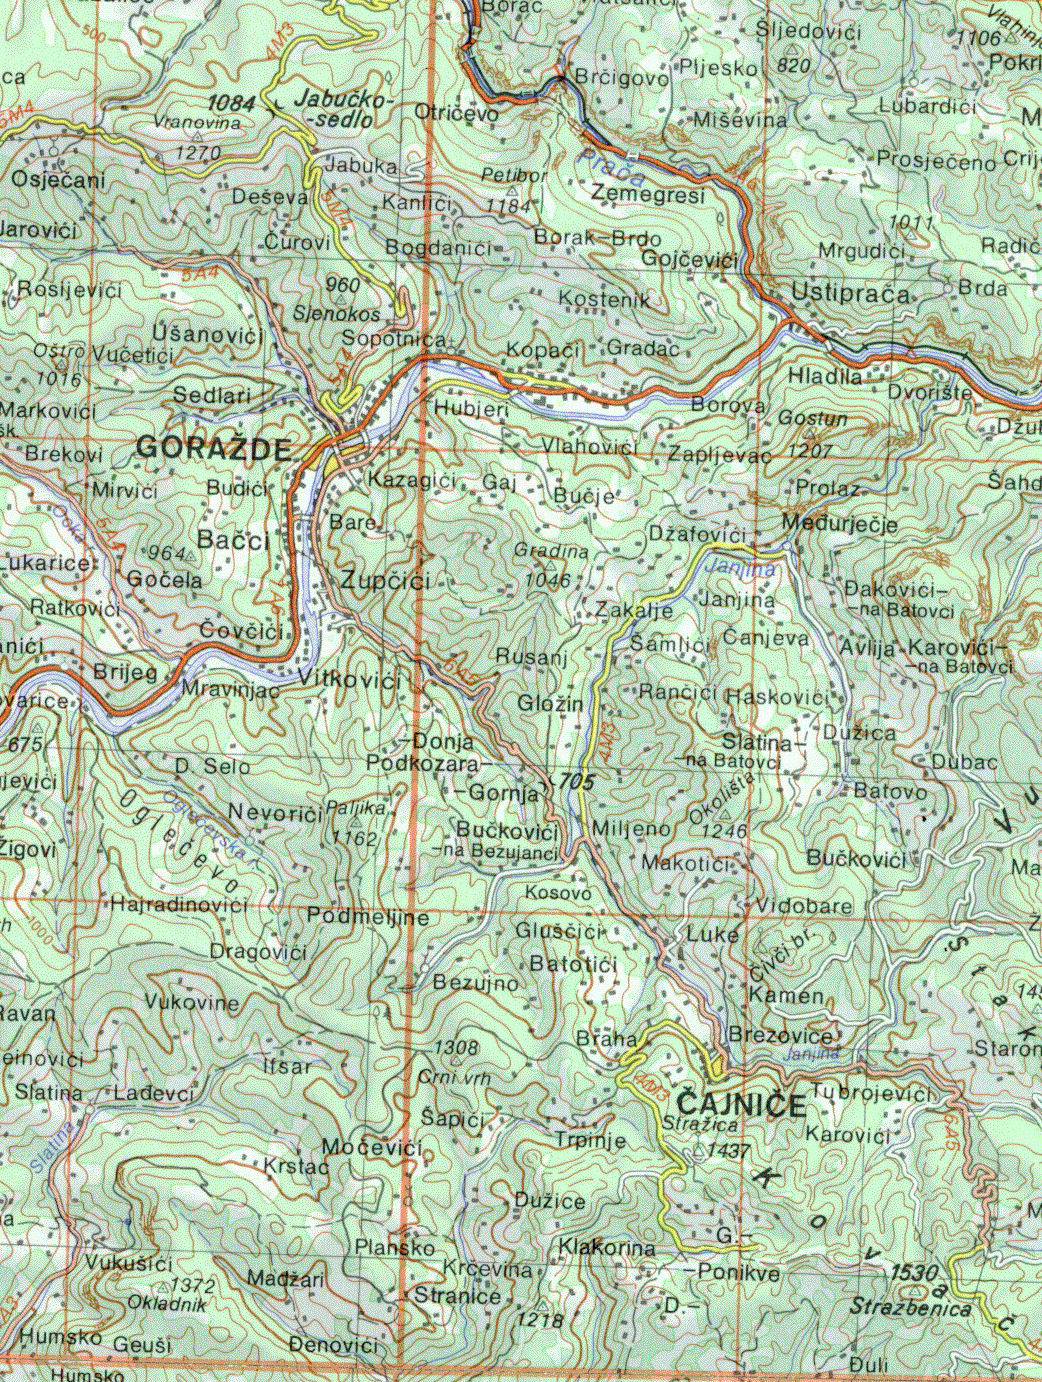 topografska karta slavonije Vučevica   DINARSKO GORJE topografska karta slavonije